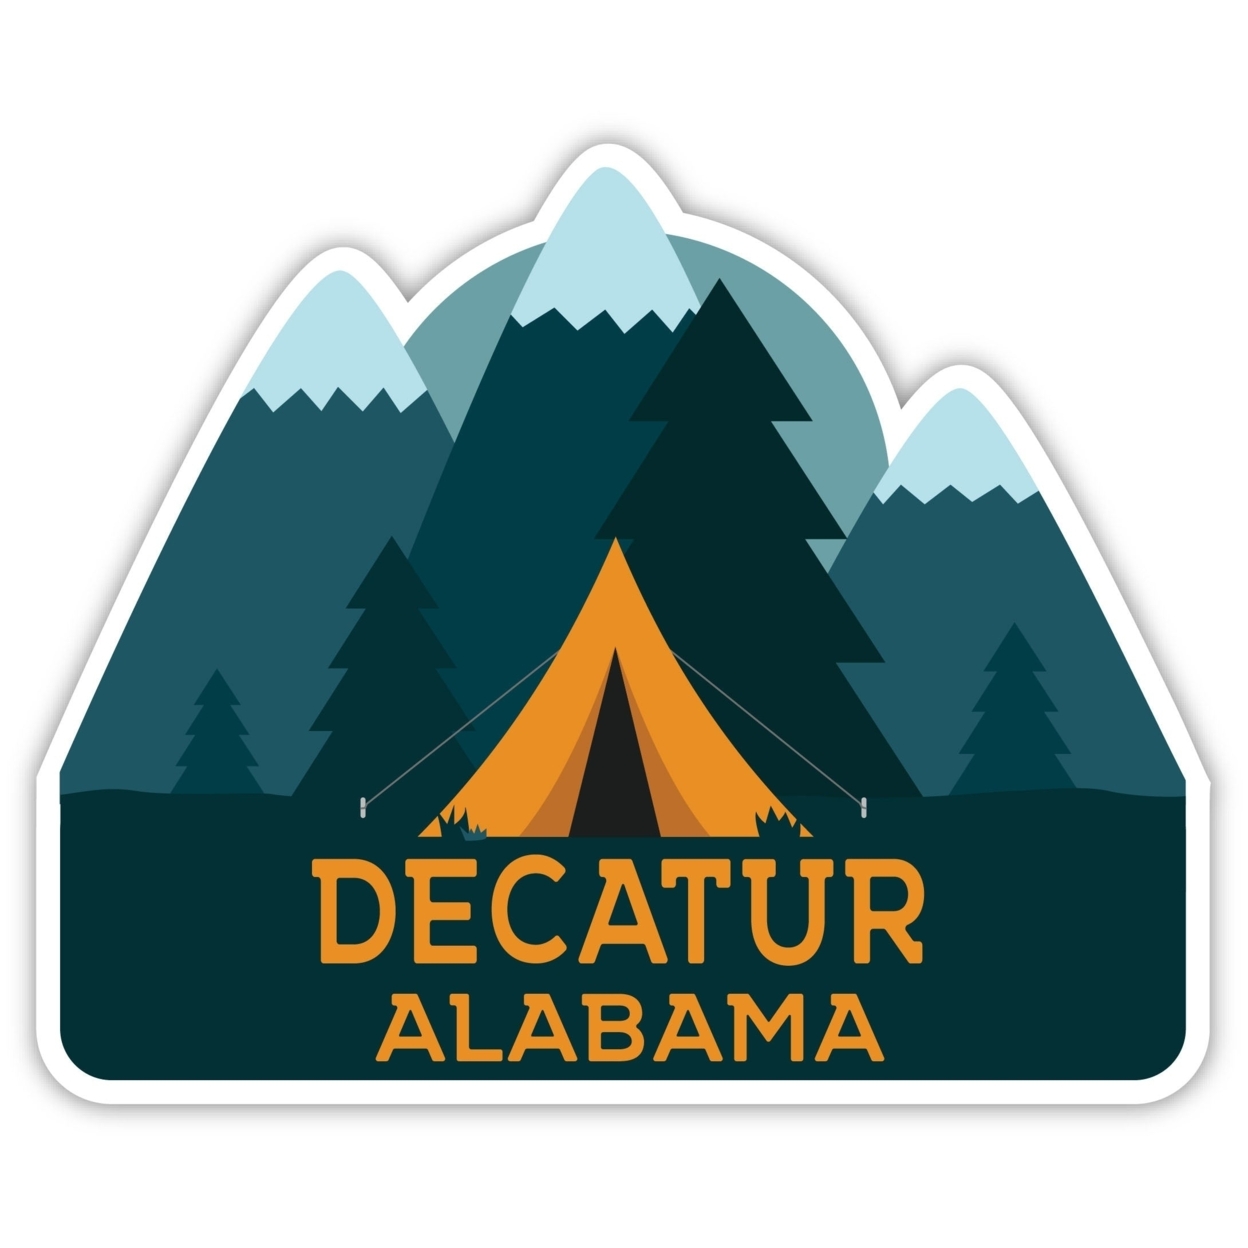 Decatur Alabama Souvenir Decorative Stickers (Choose Theme And Size) - Single Unit, 2-Inch, Tent